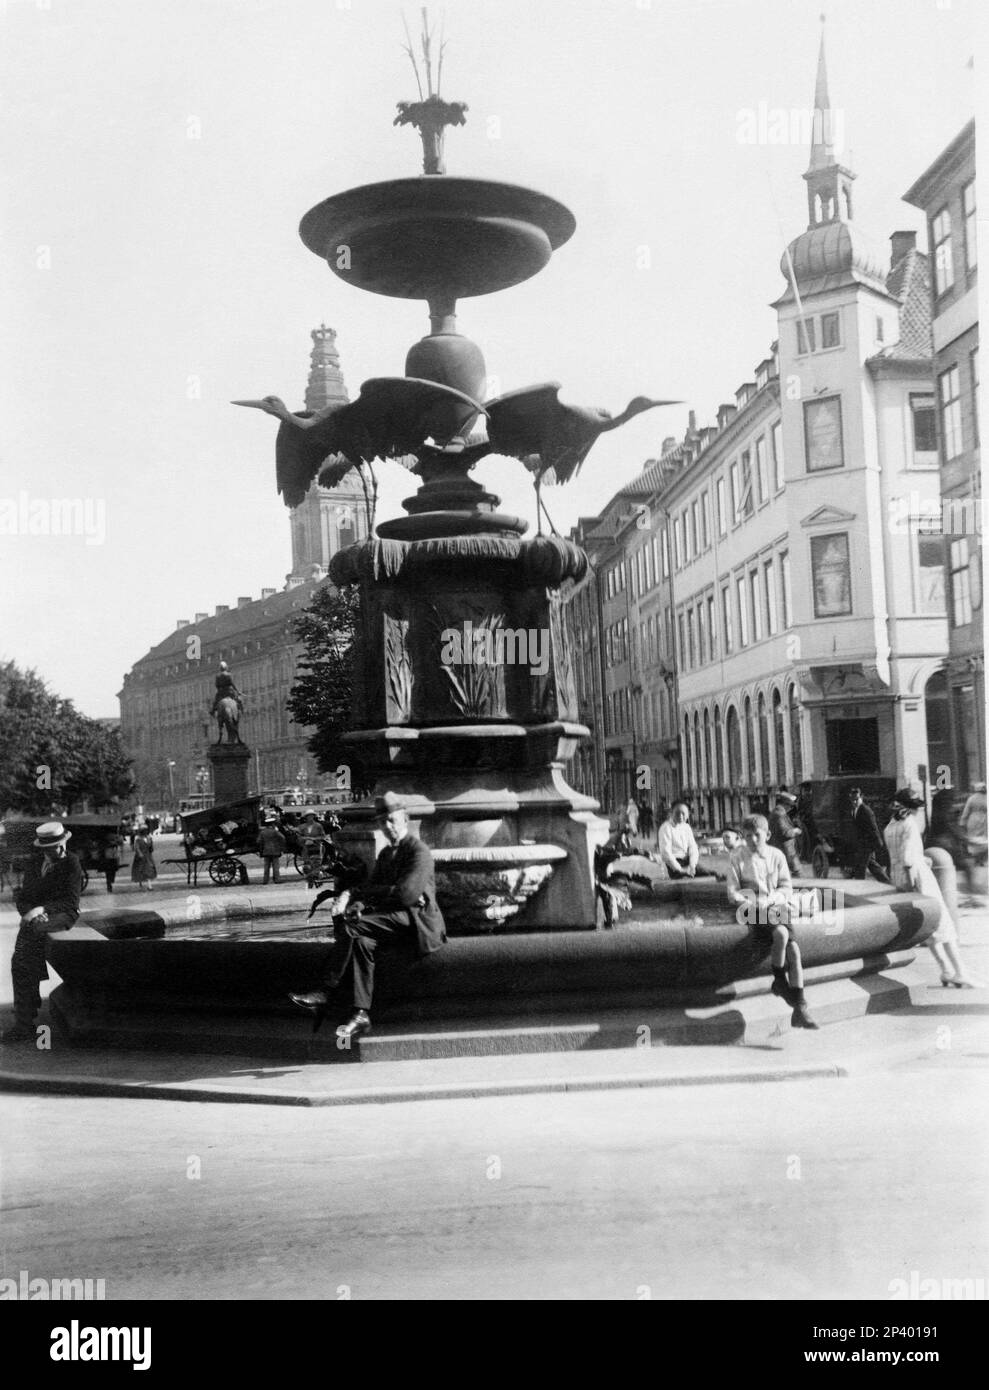 1920, COPENHAGEN, DINAMARGERTORV AVENUE 1894 - DANIMARCA - GEOGRAFIA - vacanze - vacaciones - TURISMO - ESCANDINAVIA - COPENAGHEN - scultura - ESCULTURA - FOTO STORICHE - HISTORIA - cigüeña -- -- Archivio GBB Foto de stock